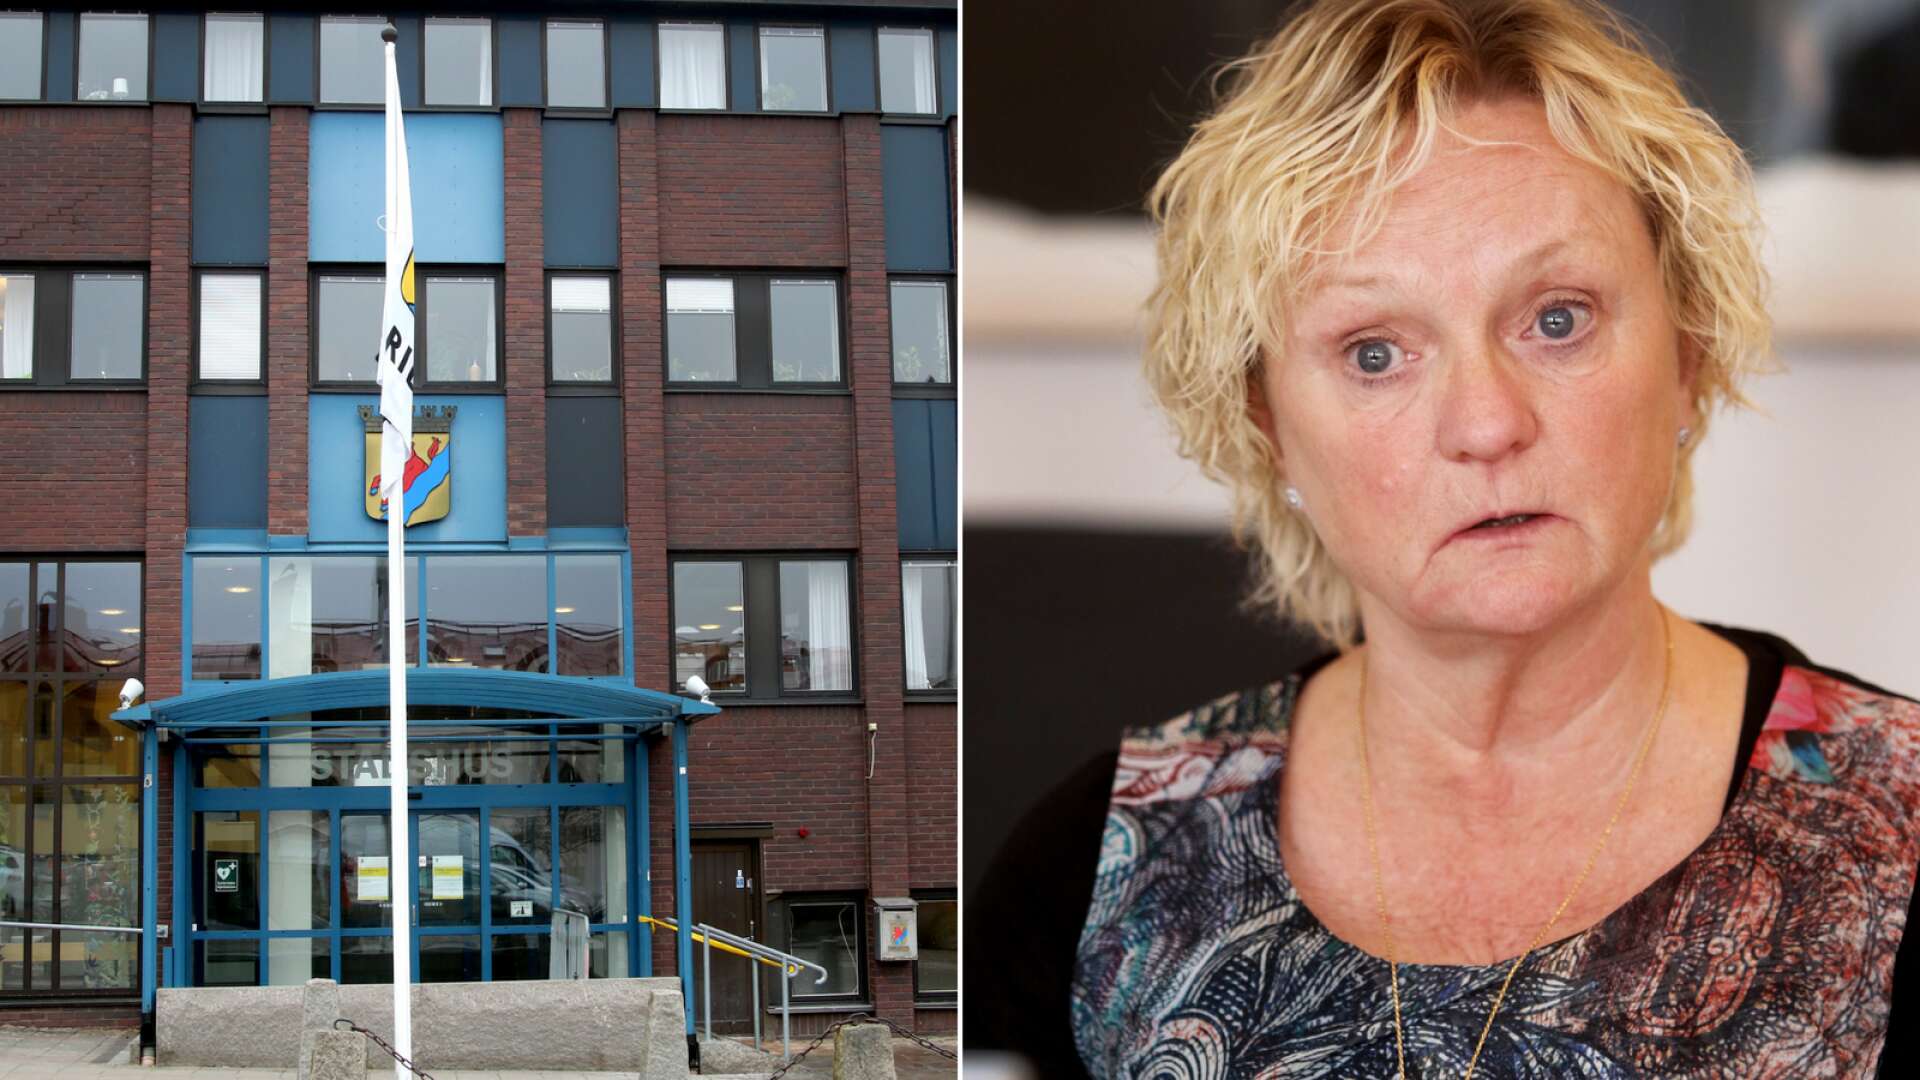 Mariestads tidigare socialchef Karin Utbo bemöter nu kritiken mot henne: ”Jag har aldrig undanhållit något underskott”, säger hon och menar istället att det finns brister i både arbetsmiljö och organisation i stadshuset.